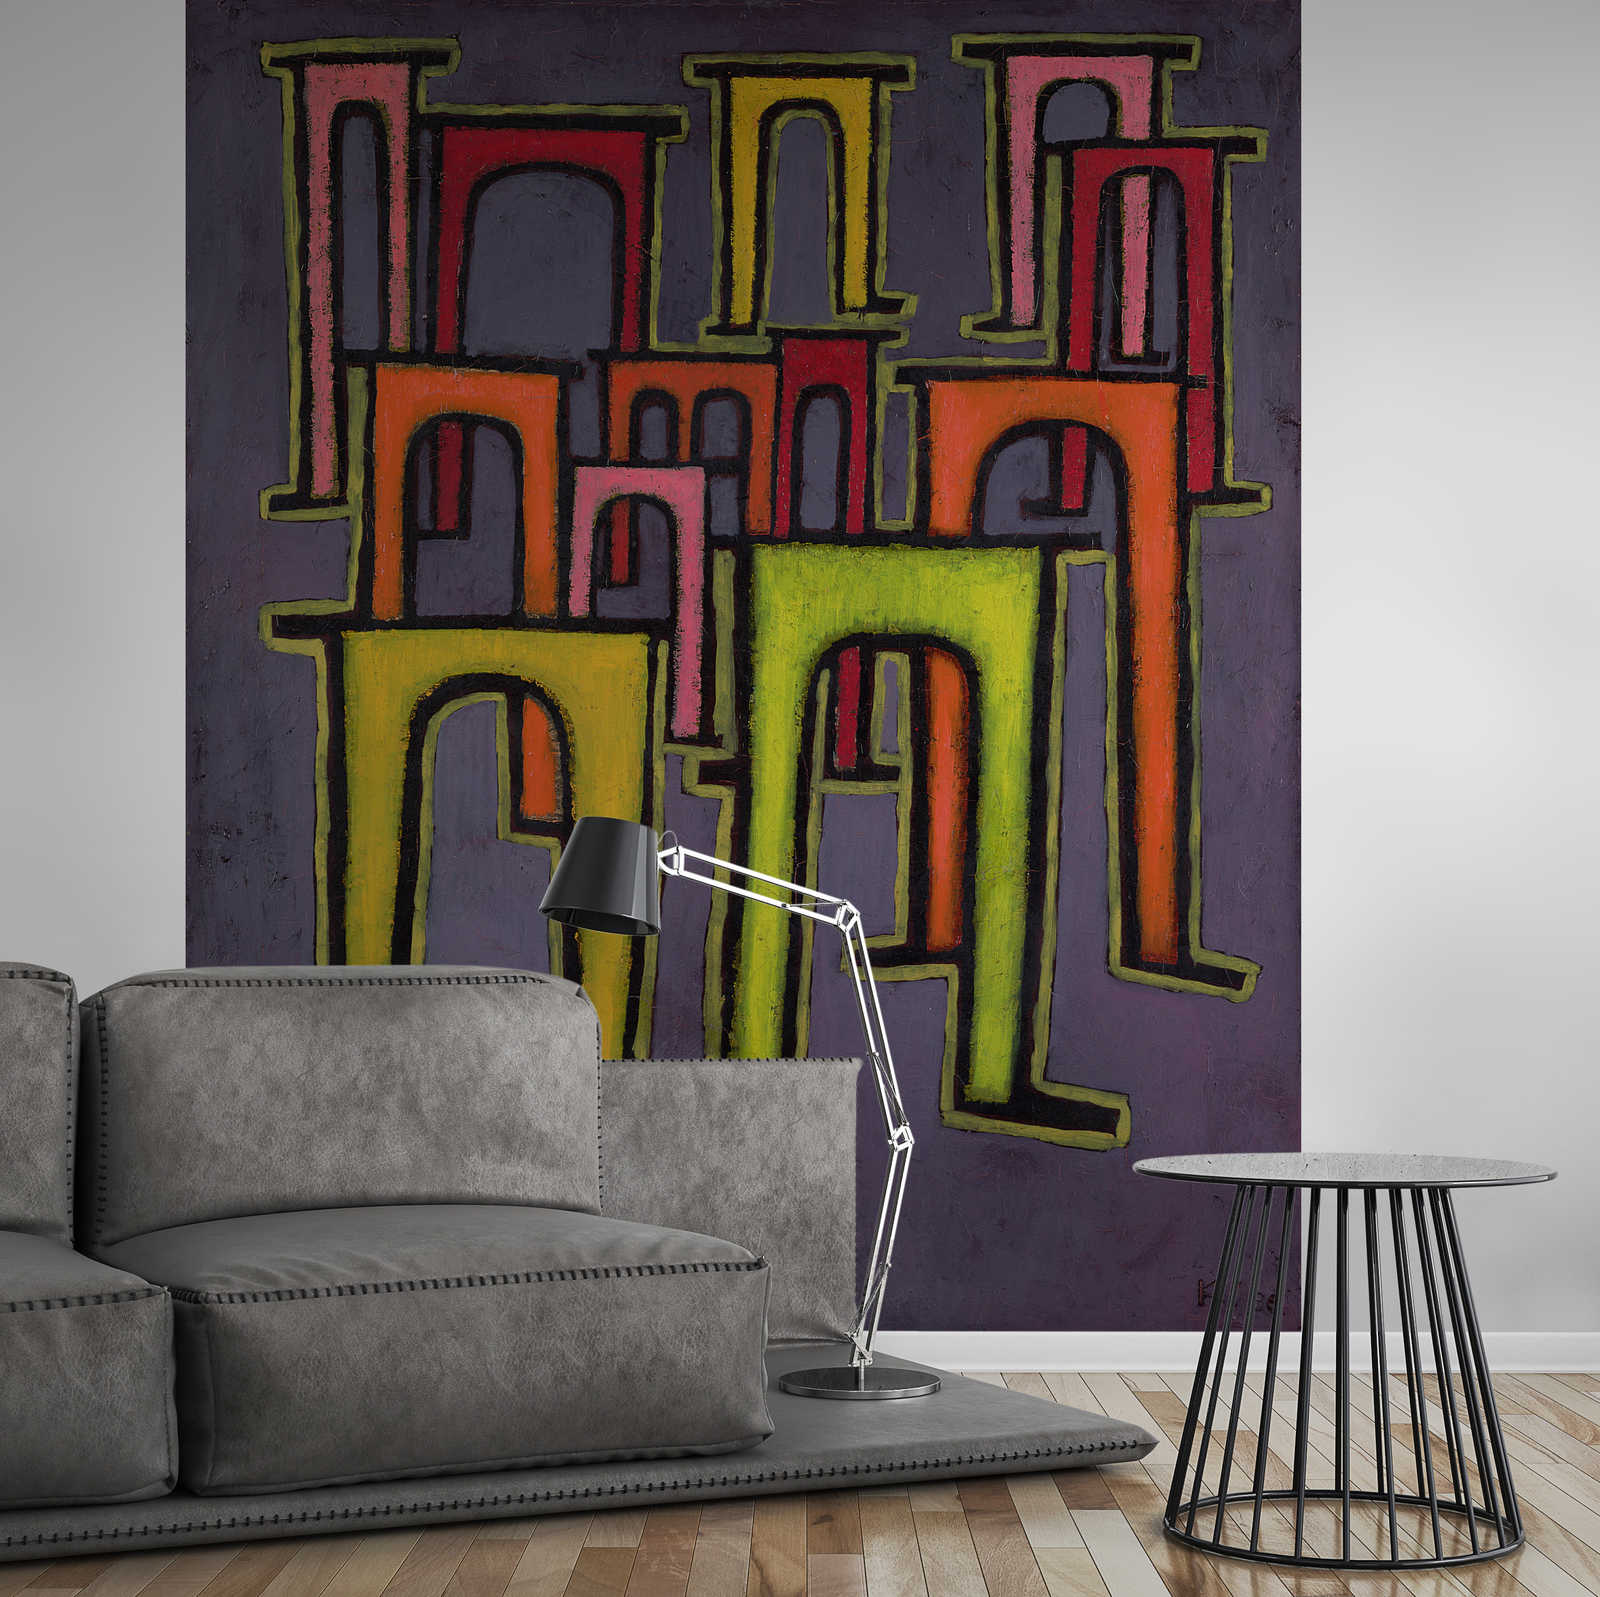             Muurschildering "Revolutie van het Viaduct" door Paul Klee
        